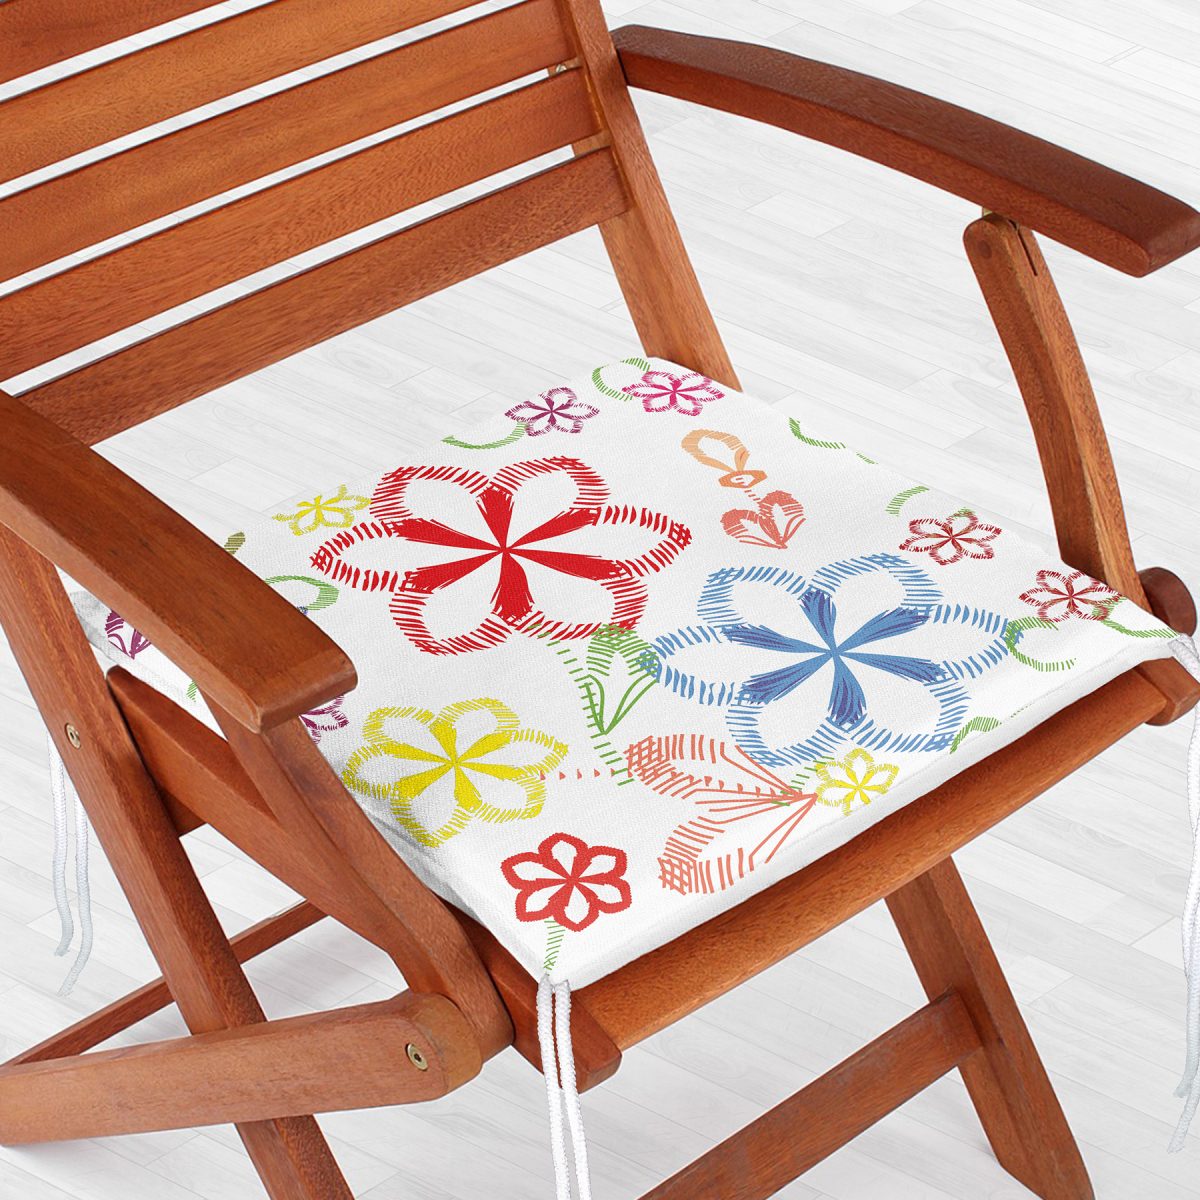 Realhomes Beyaz Zeminli Rengarenk Çiçekler Dijital Baskılı Modern Sandalye Minderi Realhomes